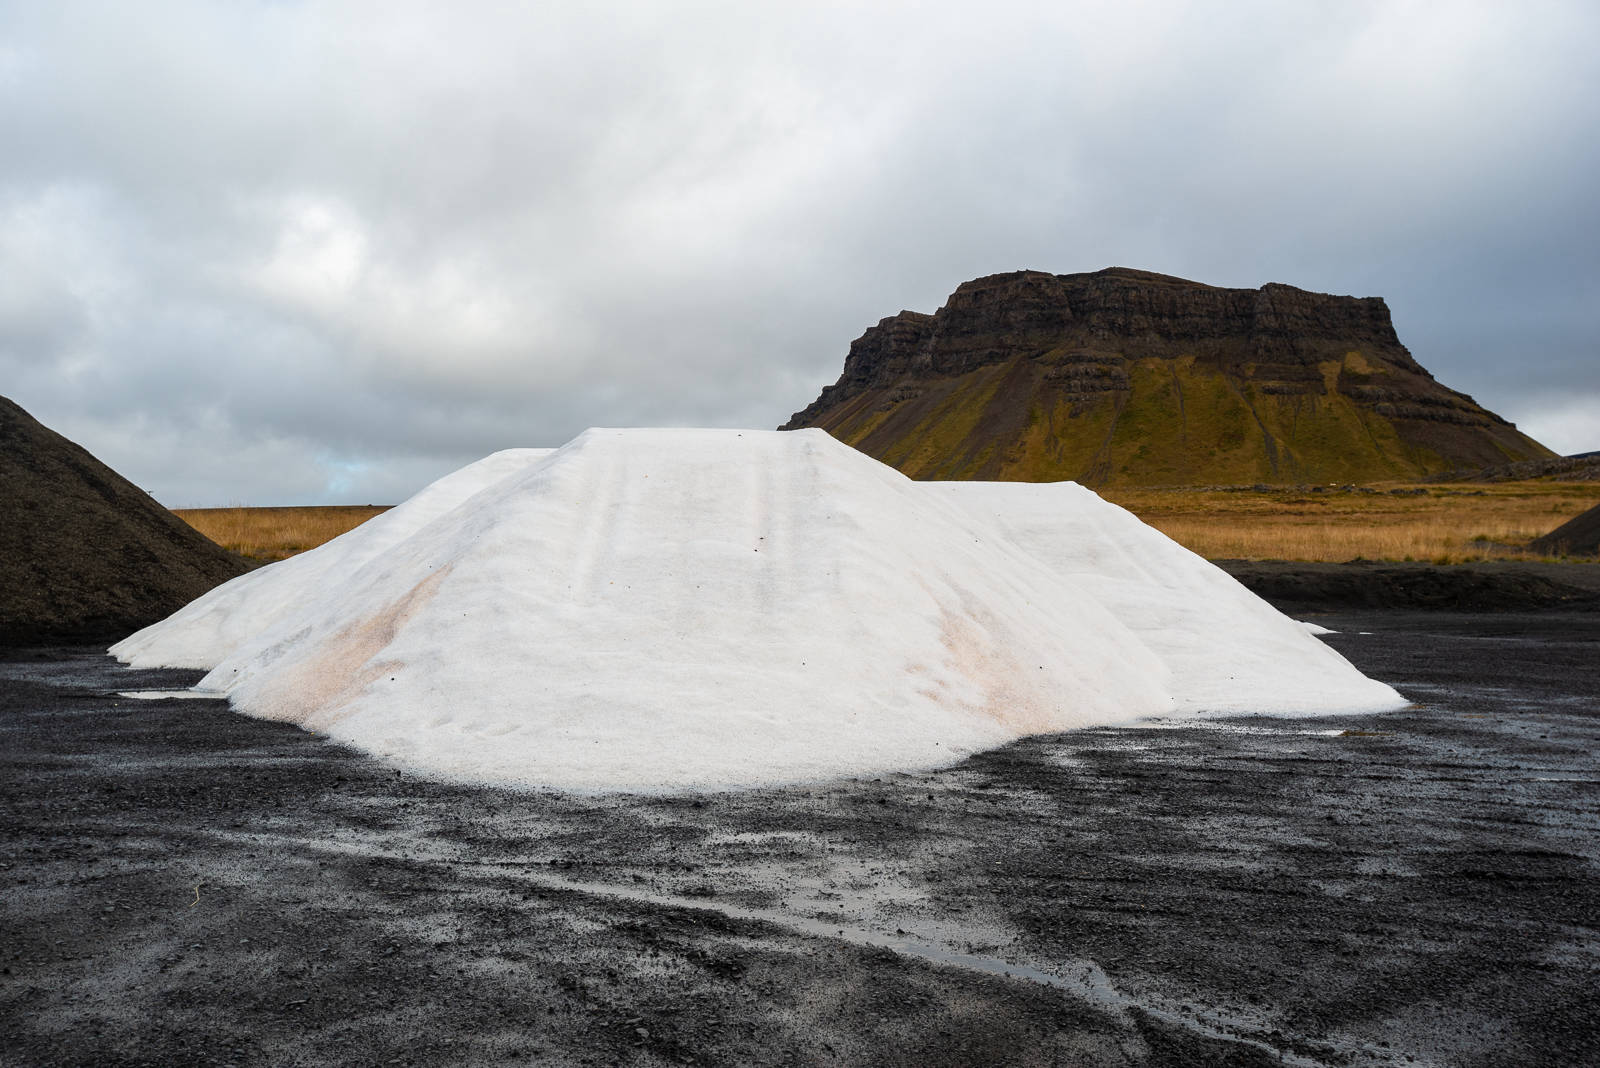 Salt © 2019 Króksfjarðarnes, Iceland